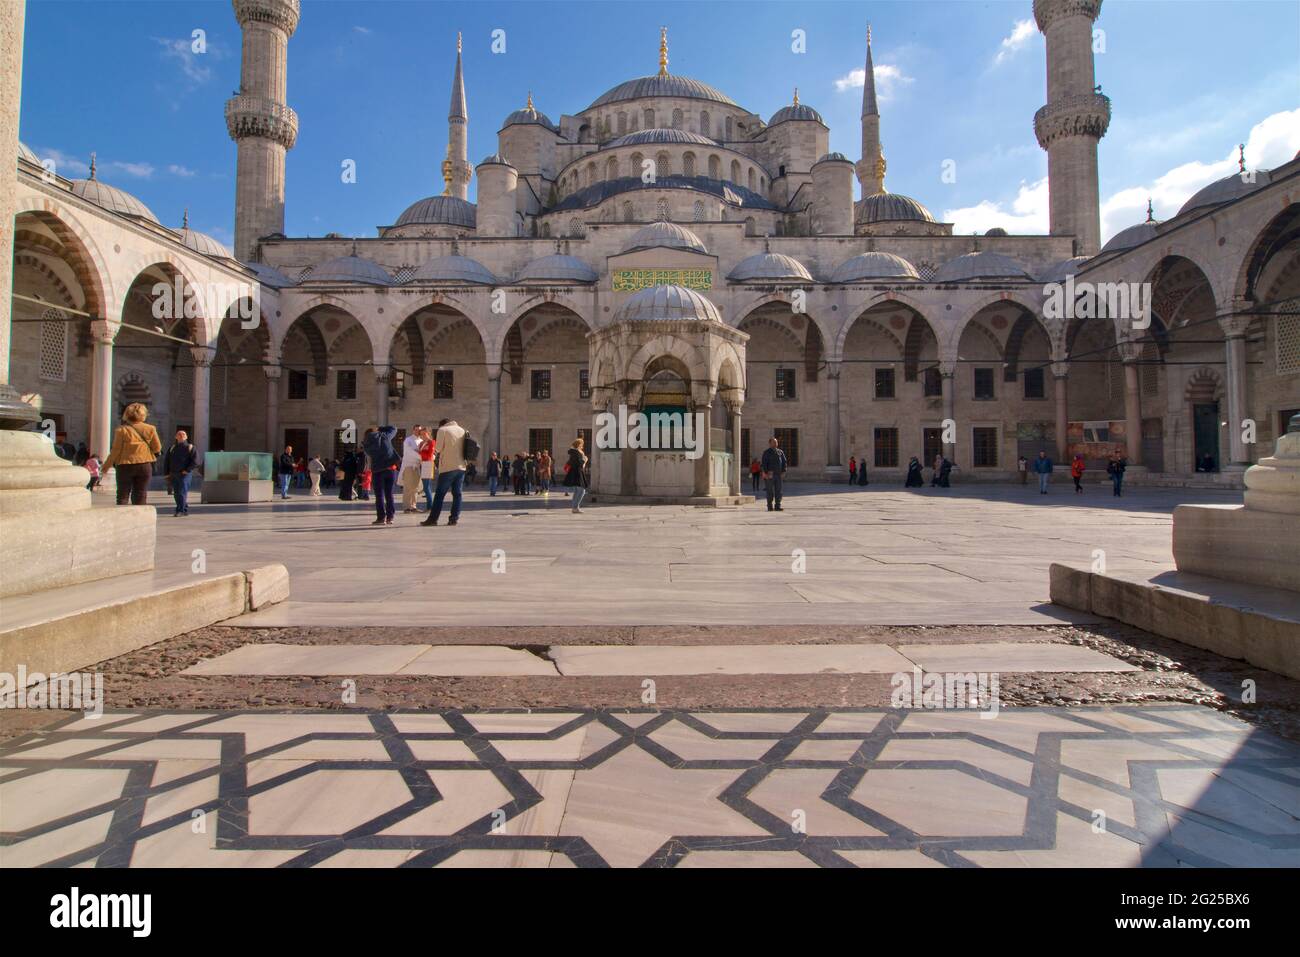 Moschea del Sultano Ahmed (in turco: Sultano Ahmet Camii), conosciuta anche come Moschea Blu. Una moschea del venerdì dell'epoca ottomana situata a Istanbul, Turchia. Luogo di culto e attrazione turistica. Foto Stock